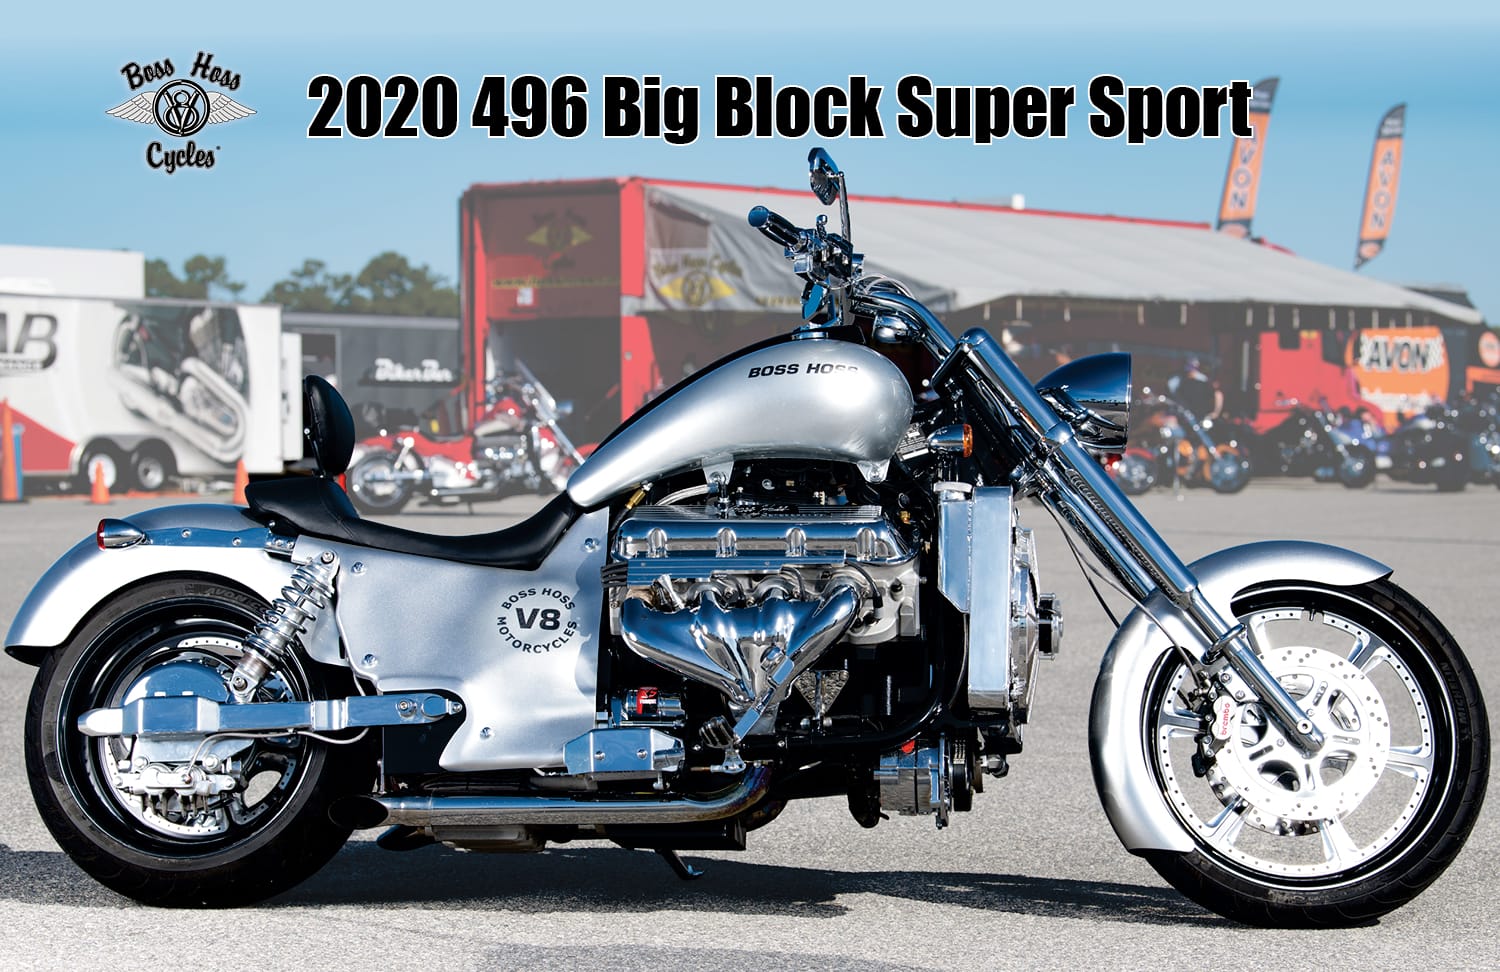 2020 496 Big Block Super Sport Silver Solid